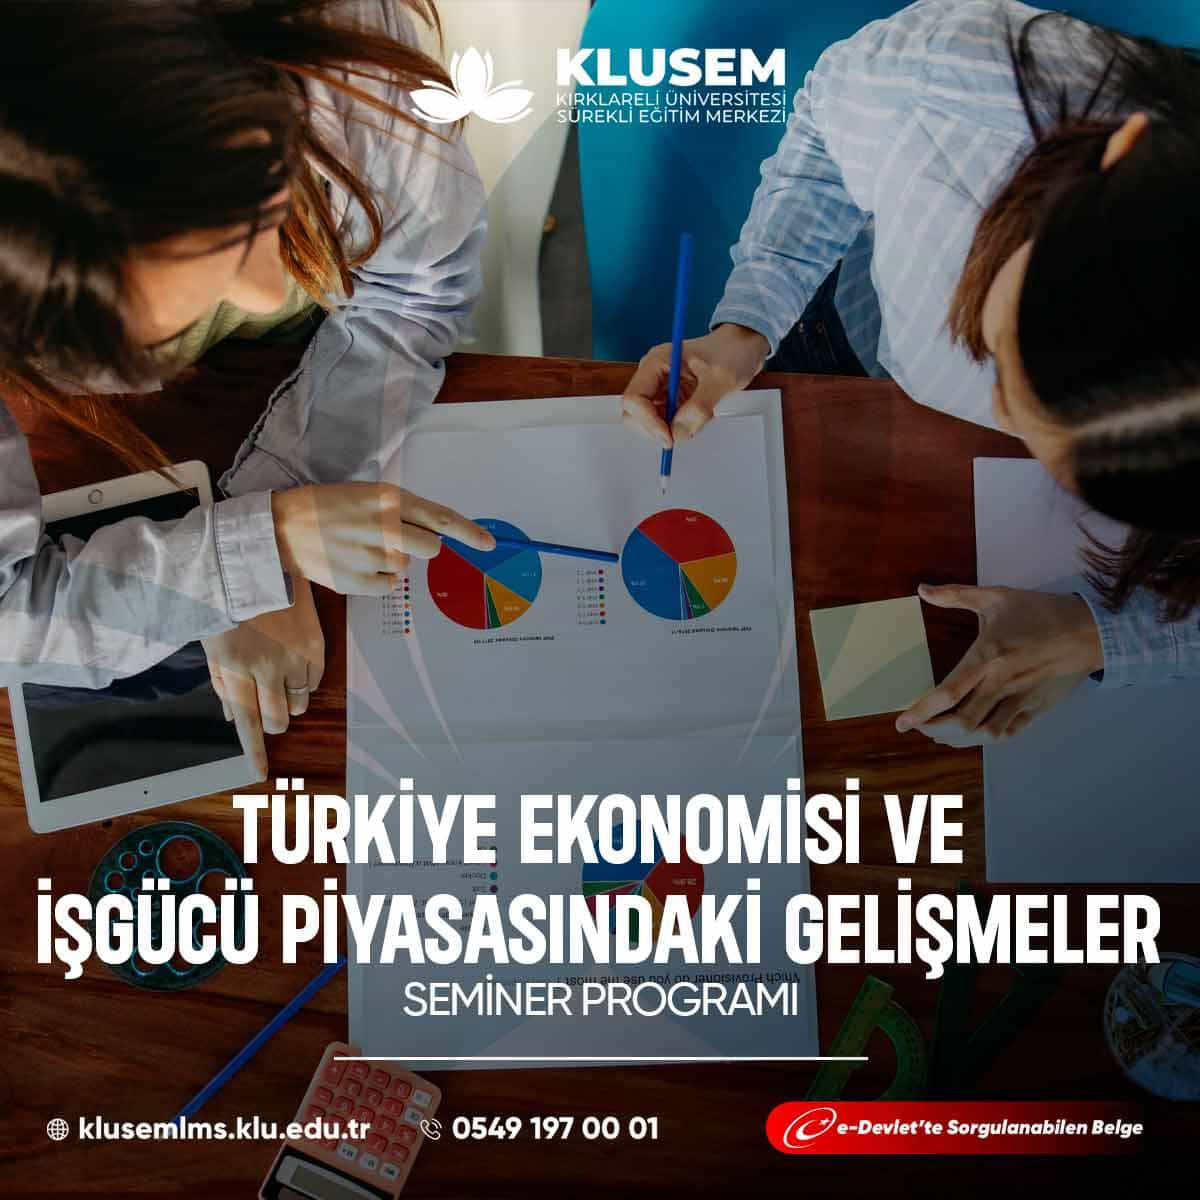 Türkiye ekonomisi, dinamik bir işgücü piyasasıyla karakterize edilir. Son yıllarda Türkiye'de işgücü piyasasında önemli değişiklikler yaşanmıştır.